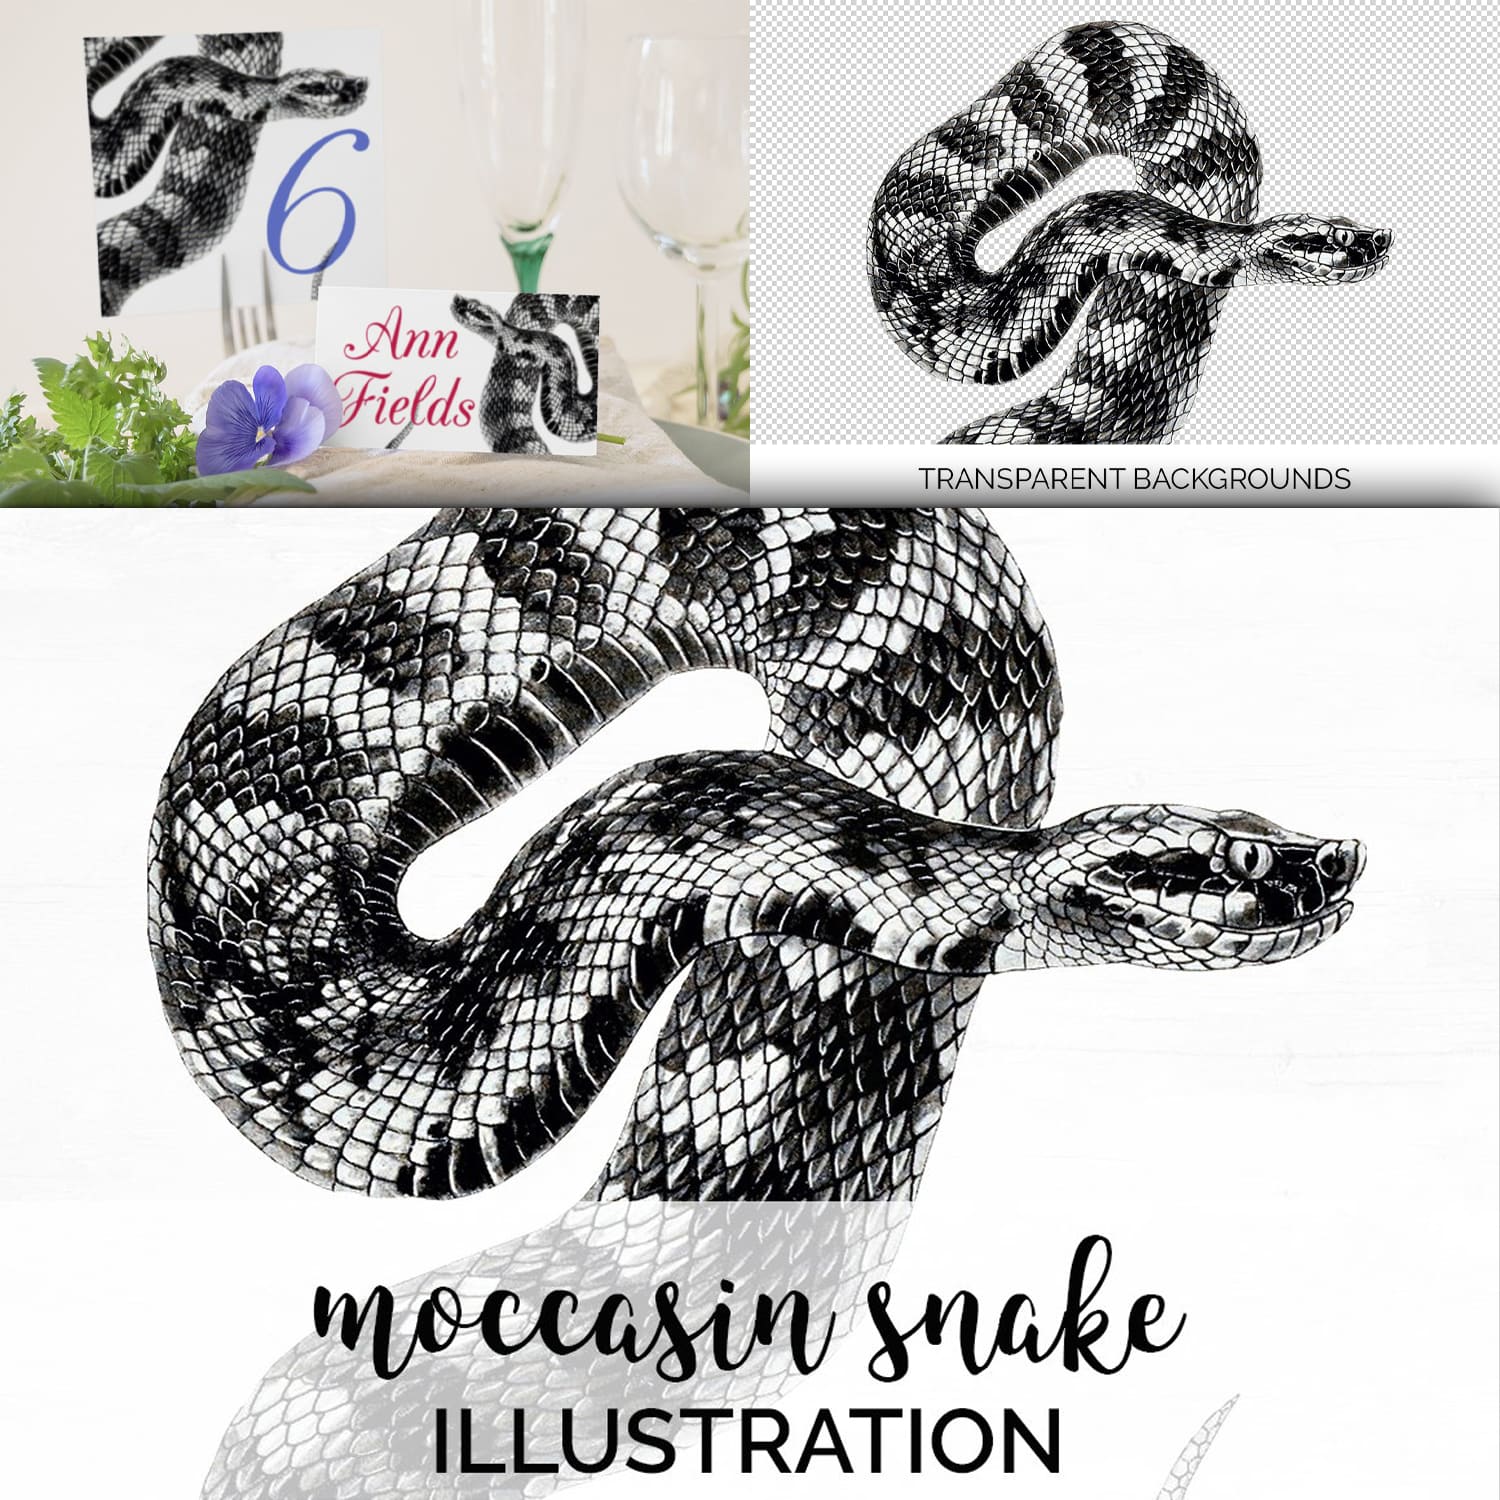 Breathtaking images set moccasin snake.